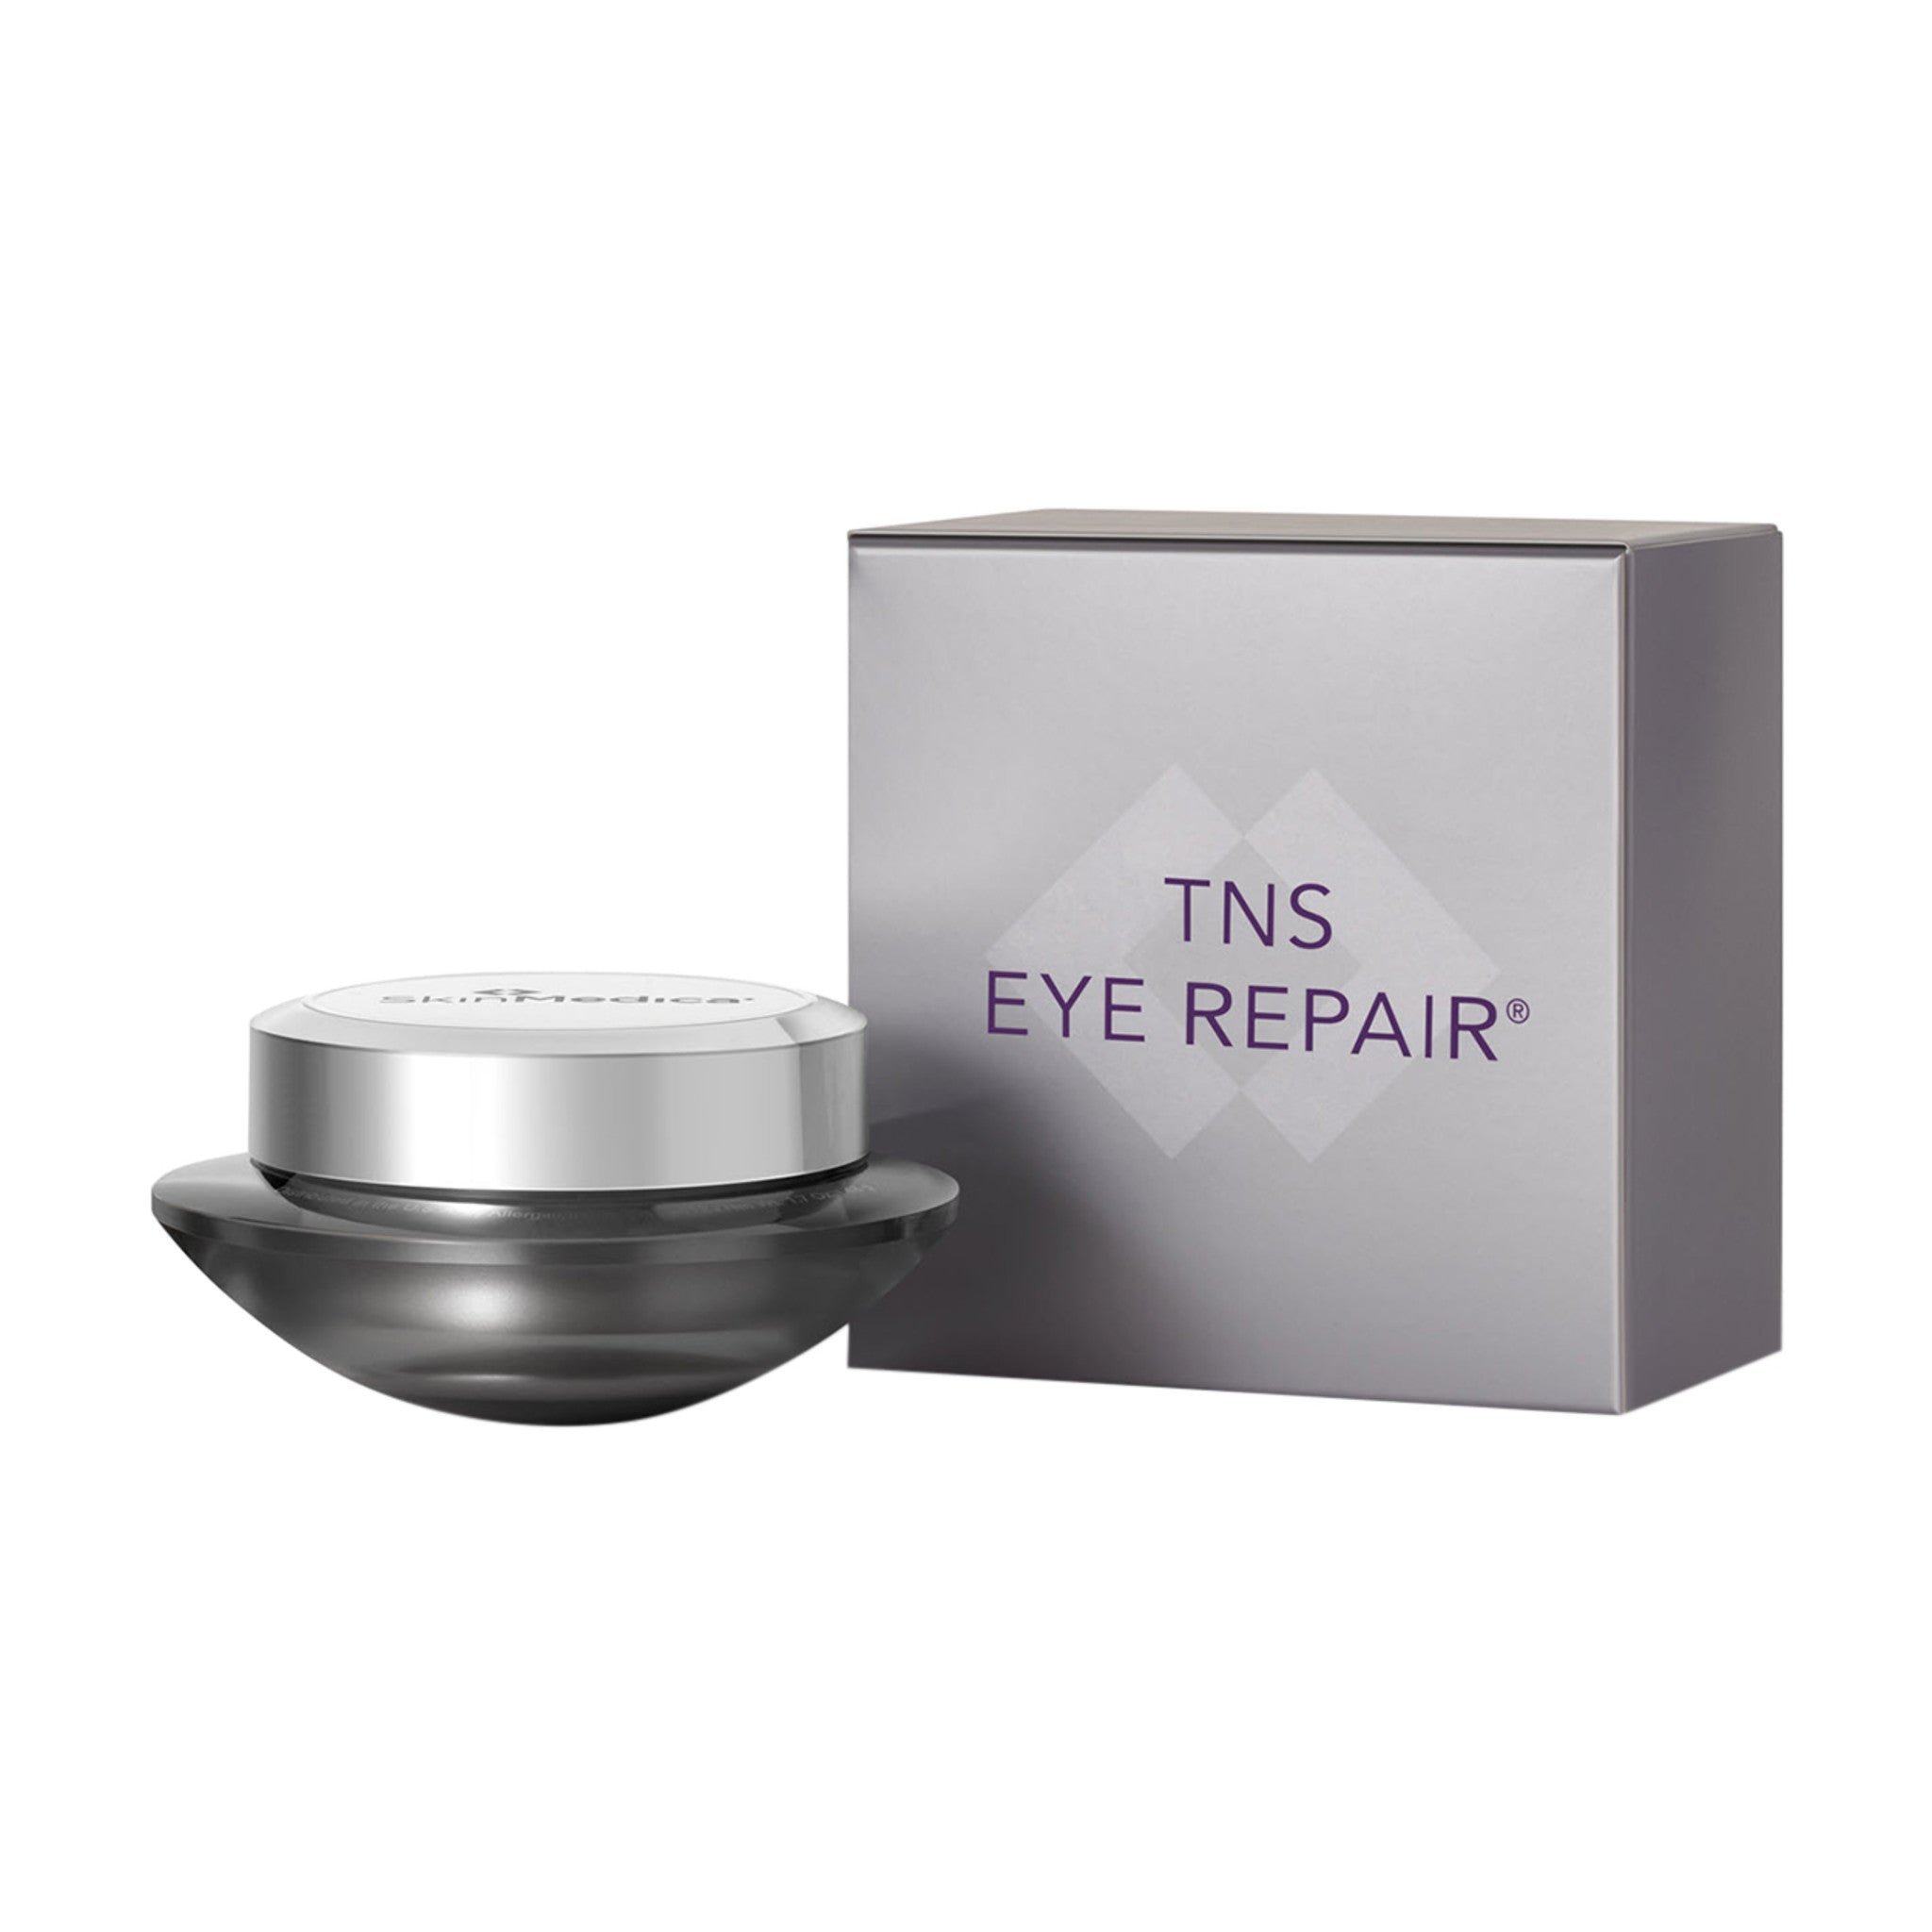 SkinMedica TNS Eye Repair main image.